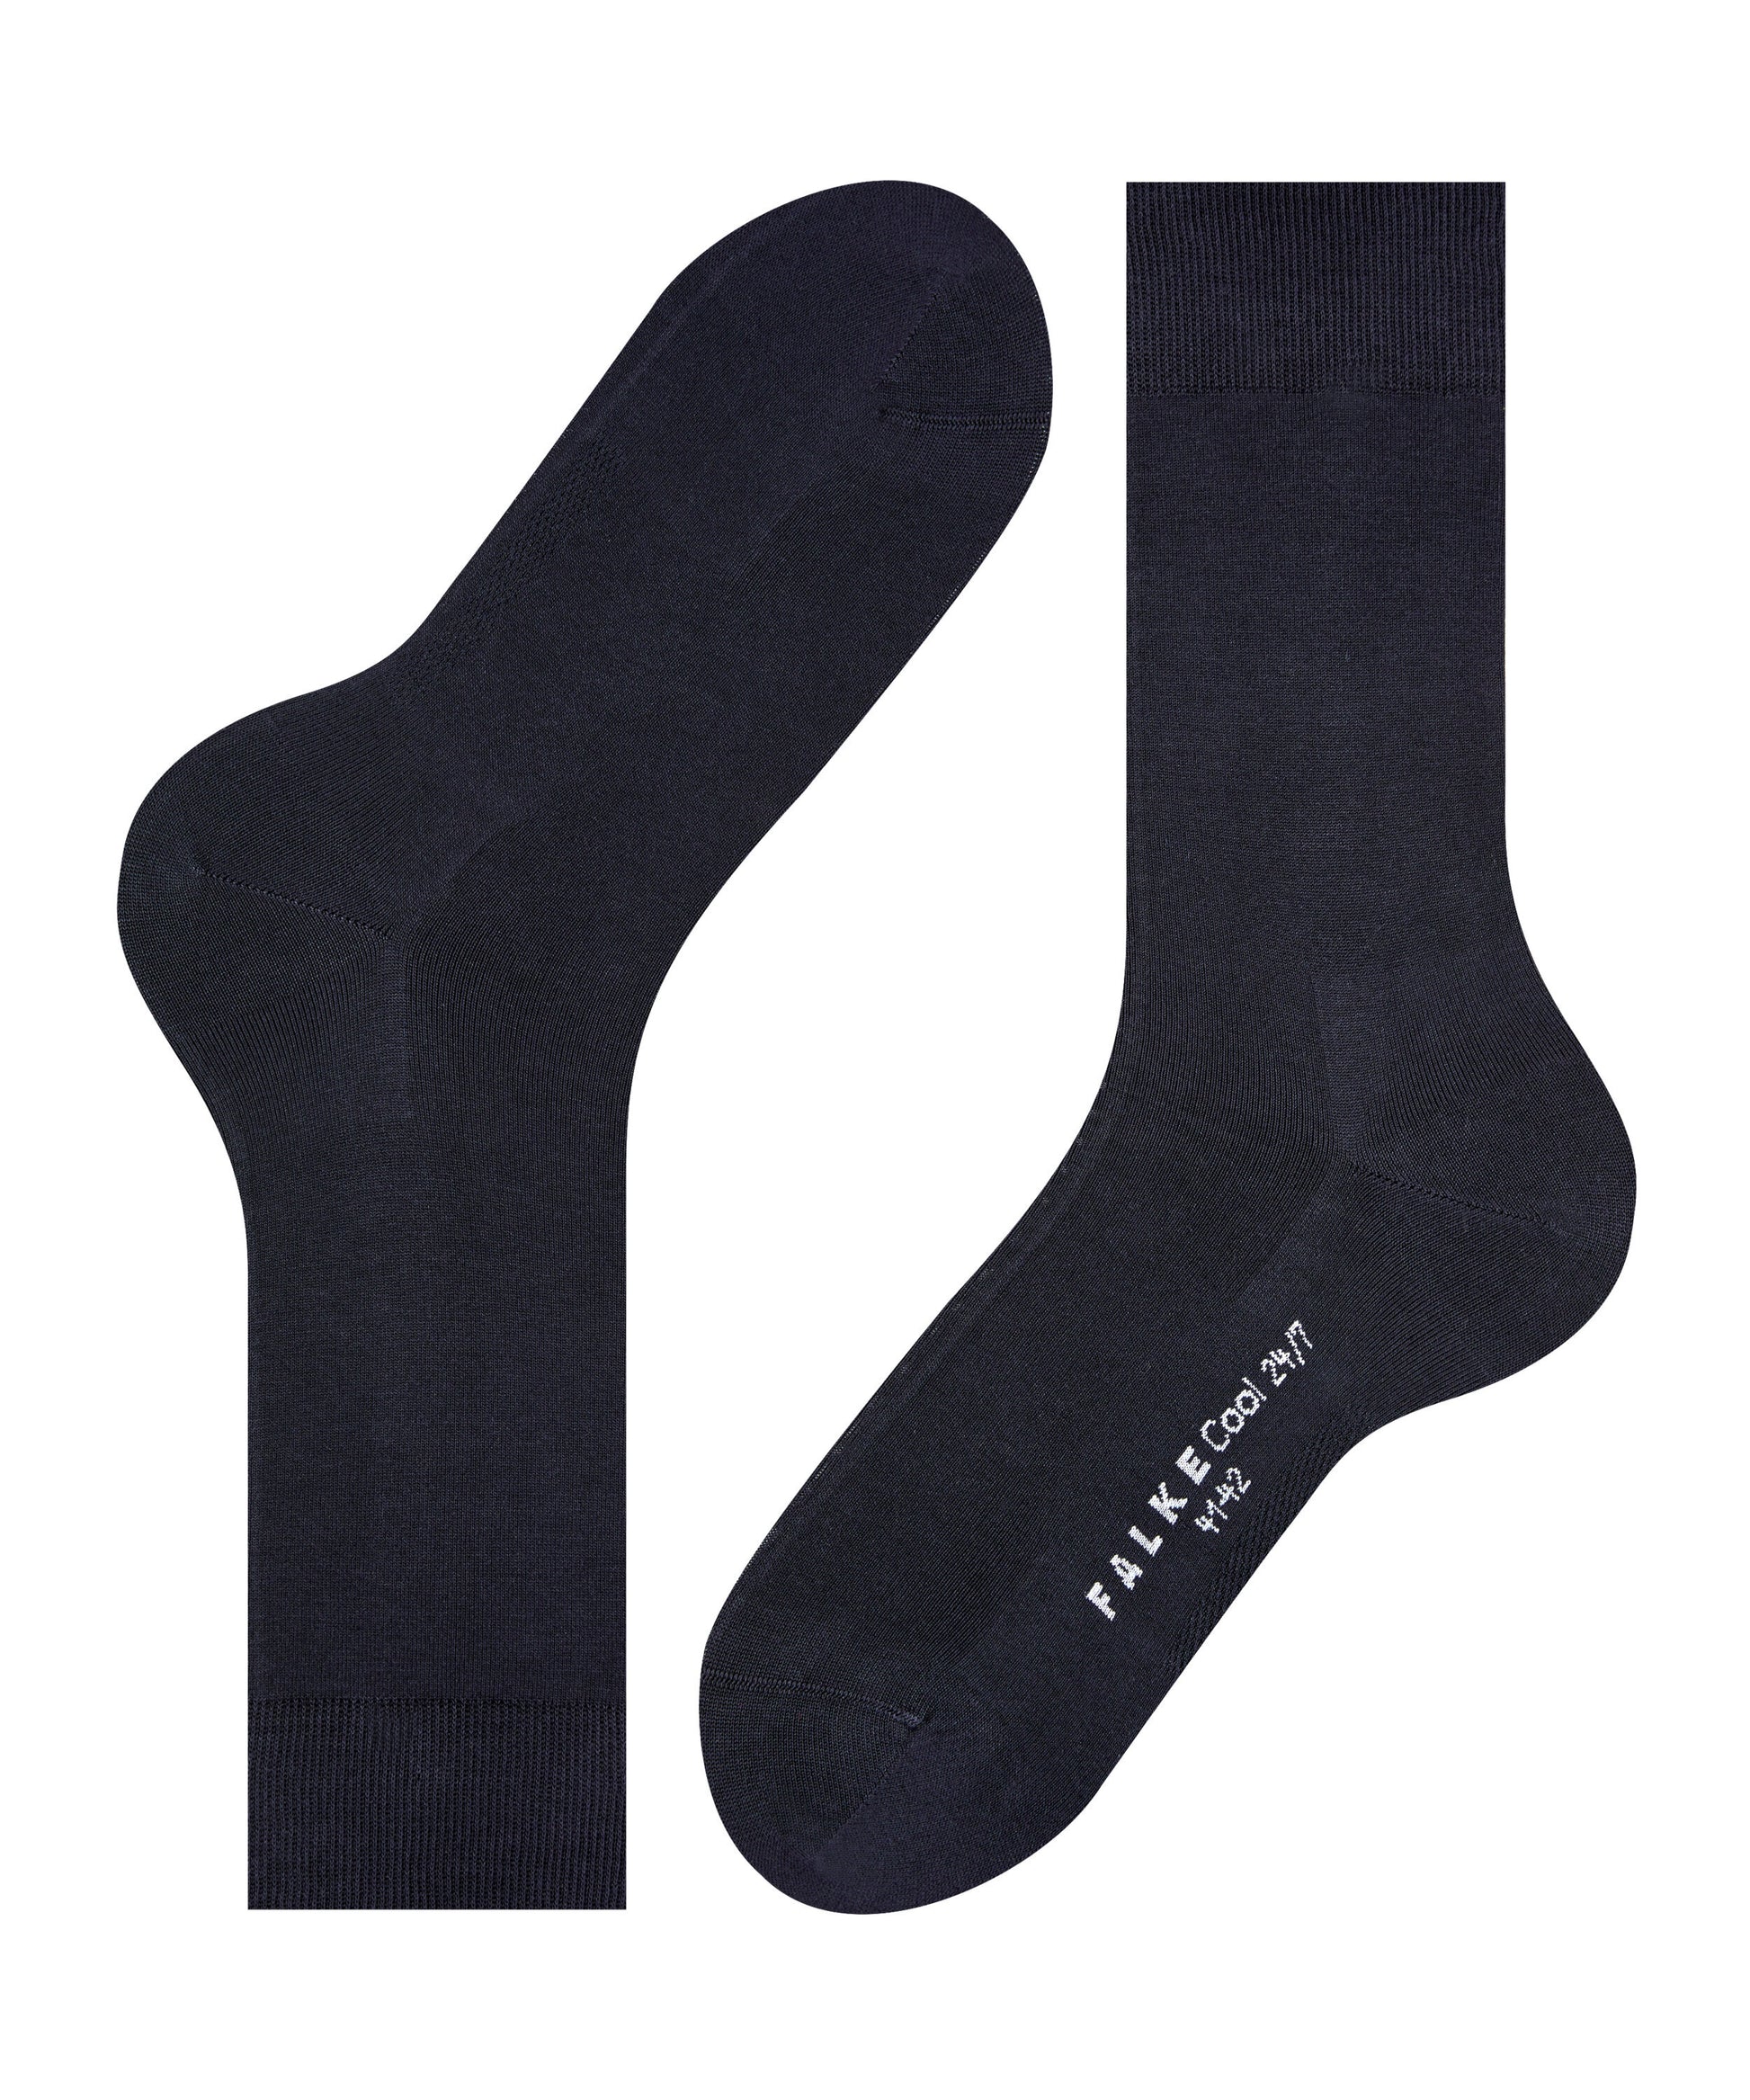 Socken Cool 24/7 (Dark Navy)